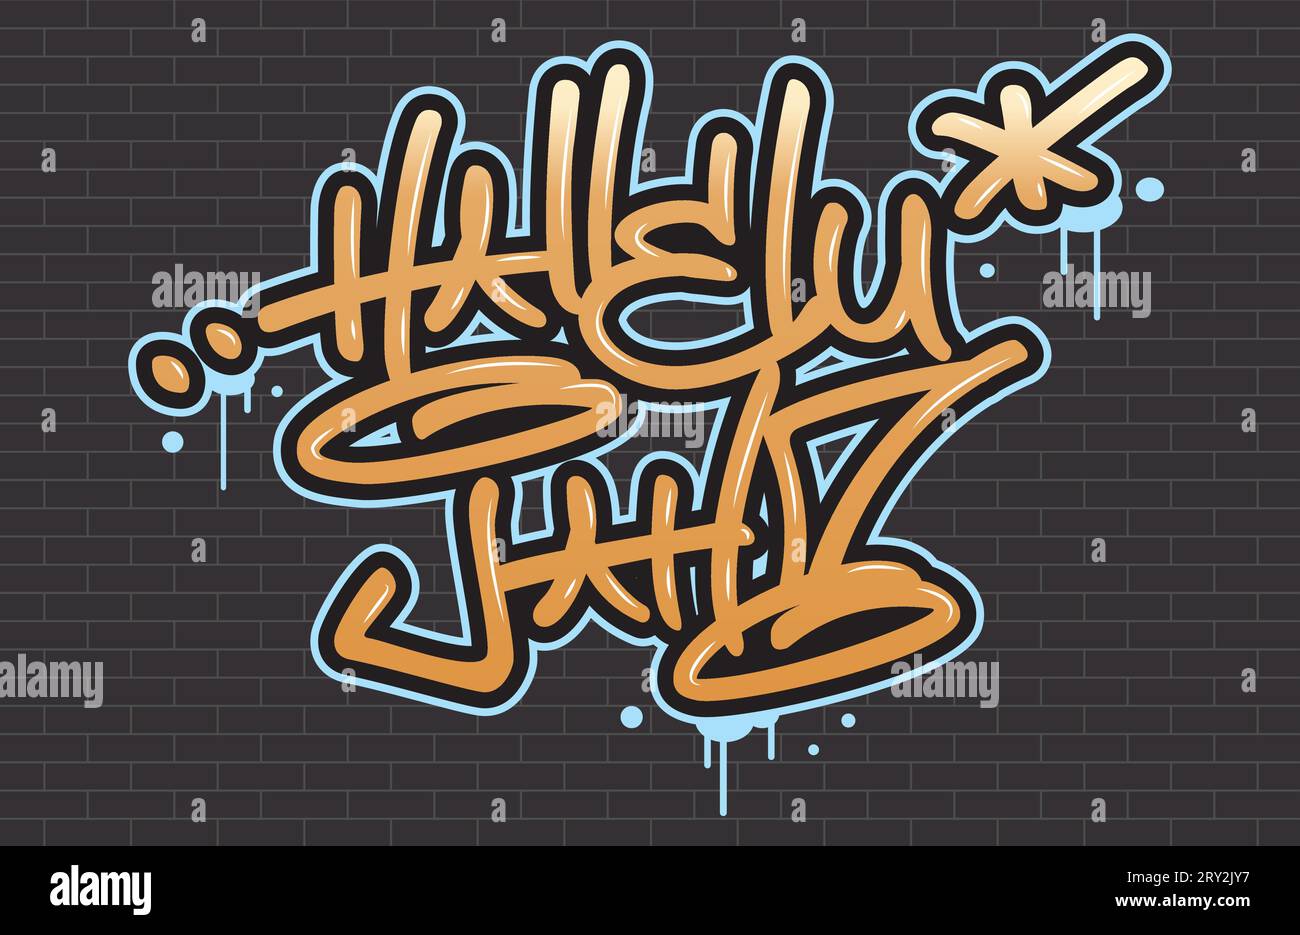 Religiöser Spraygraffiti-Tag ''Hallelujah''. Handschrifttypografie. Schwarzer Backsteinhintergrund. Stock Vektor